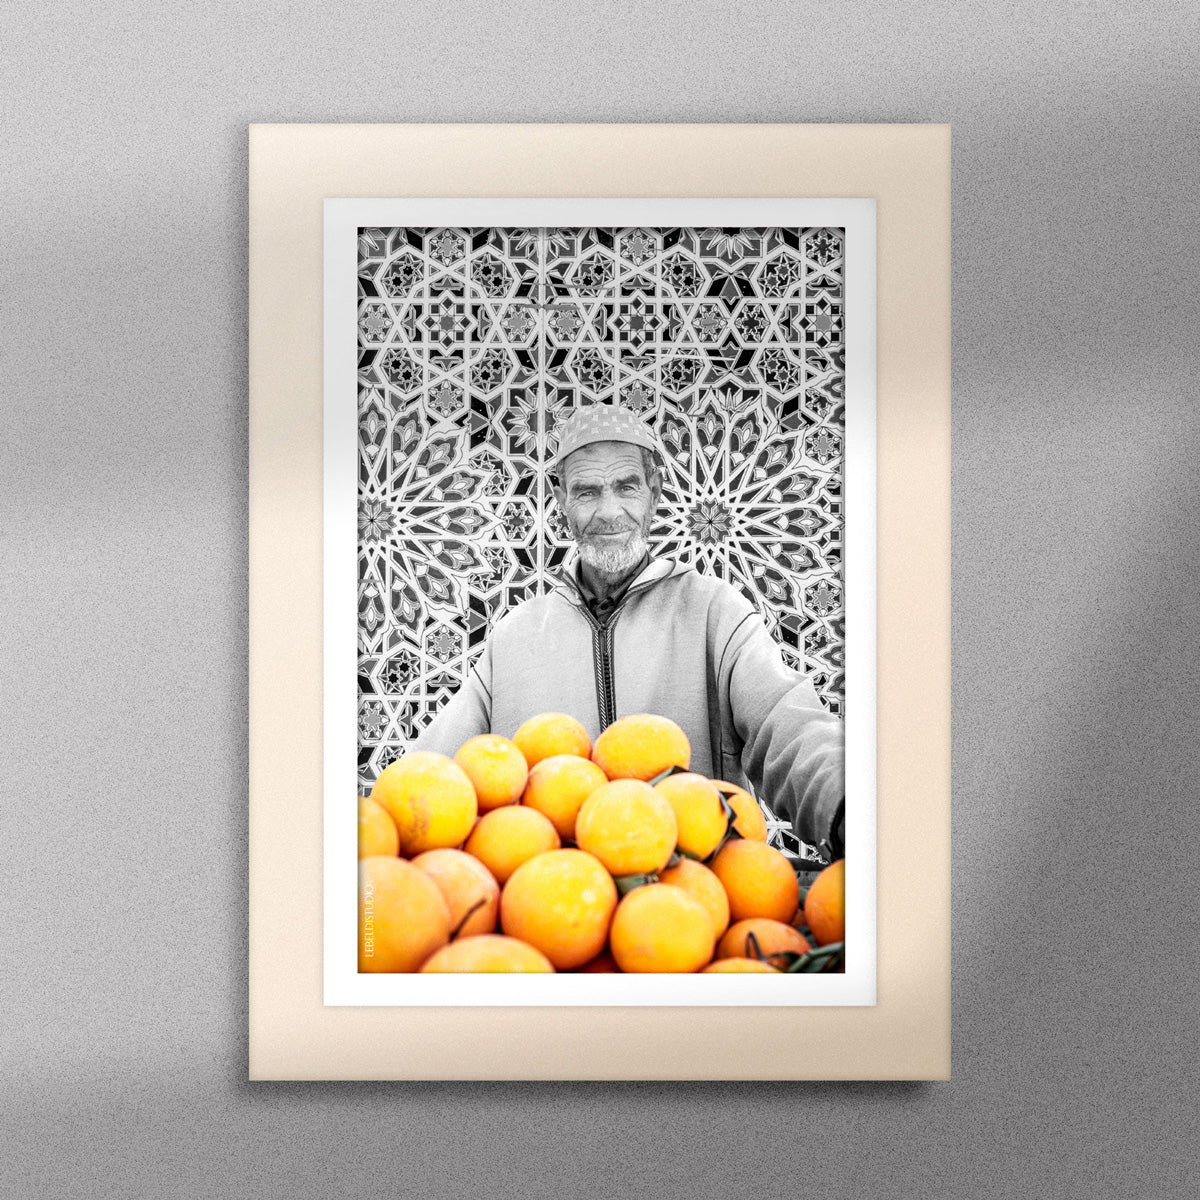 Tableau décoratif en noir et blanc d'un vieux marchand d'oranges très souriant, encadré dans un cadre en bois - Format A5.